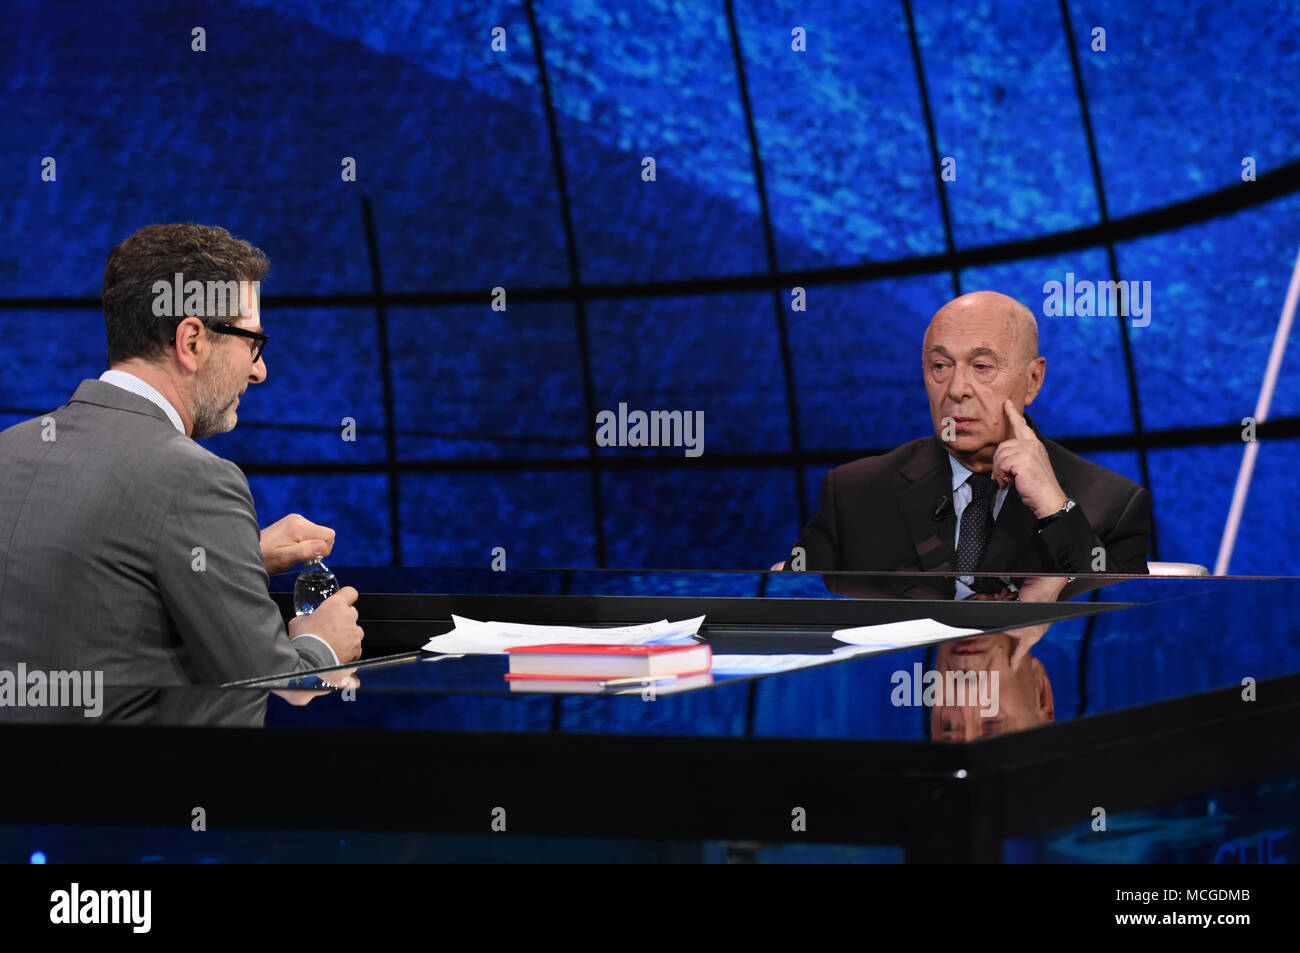 Paolo Mieli invitado del programa de televisión Che Tempo Che Fa. 15/04/2018, Milan, Italia. Foto de stock